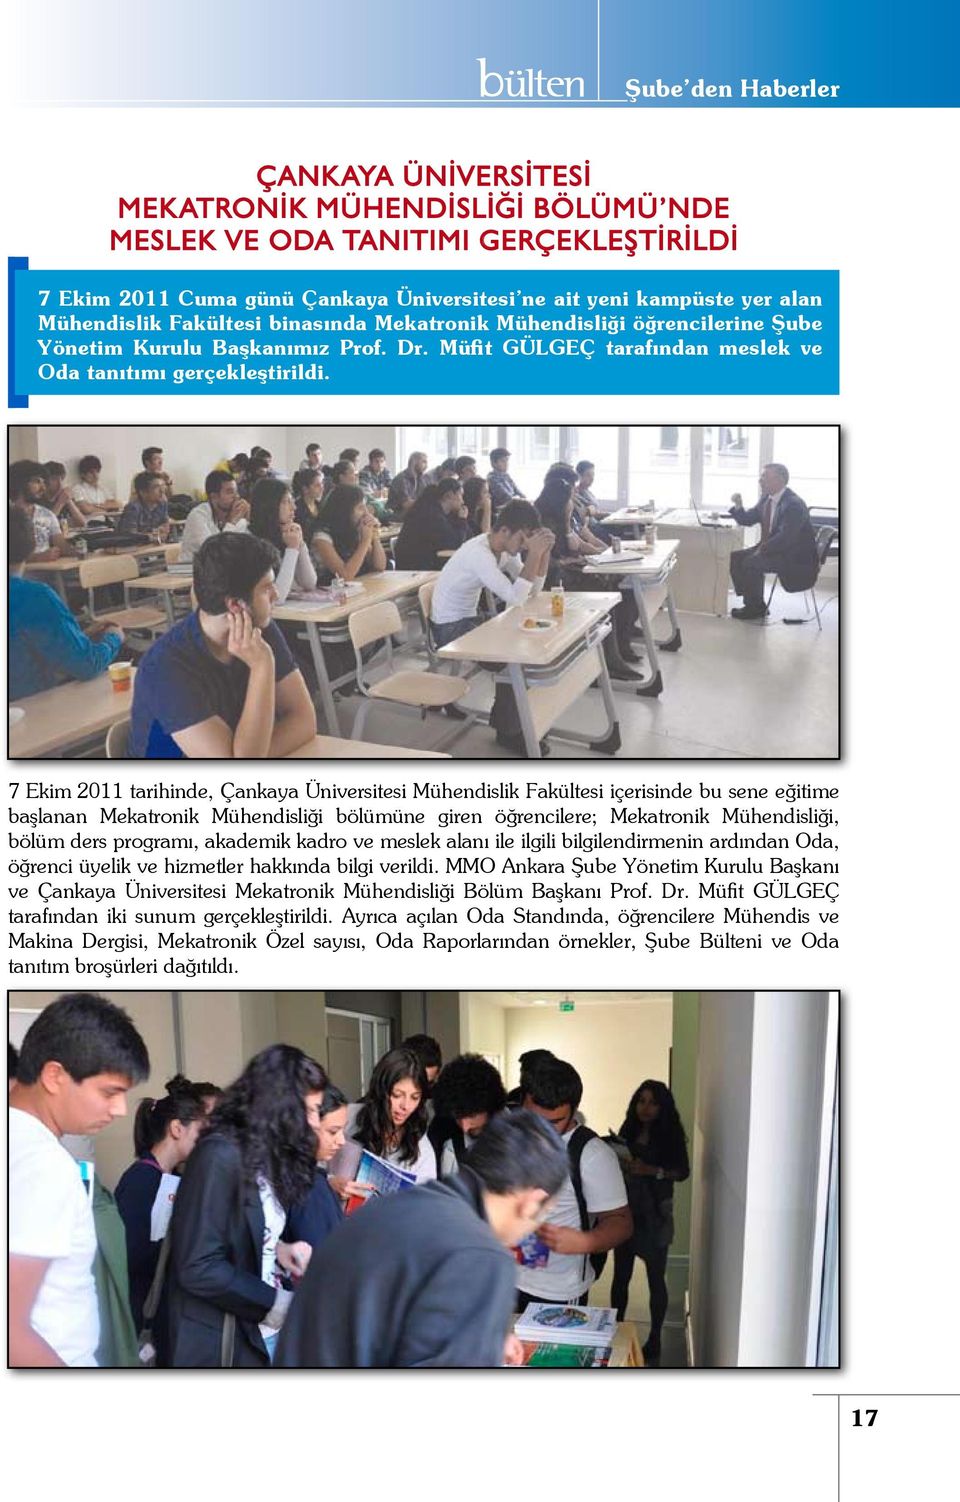 7 Ekim 2011 tarihinde, Çankaya Üniversitesi Mühendislik Fakültesi içerisinde bu sene eğitime başlanan Mekatronik Mühendisliği bölümüne giren öğrencilere; Mekatronik Mühendisliği, bölüm ders programı,